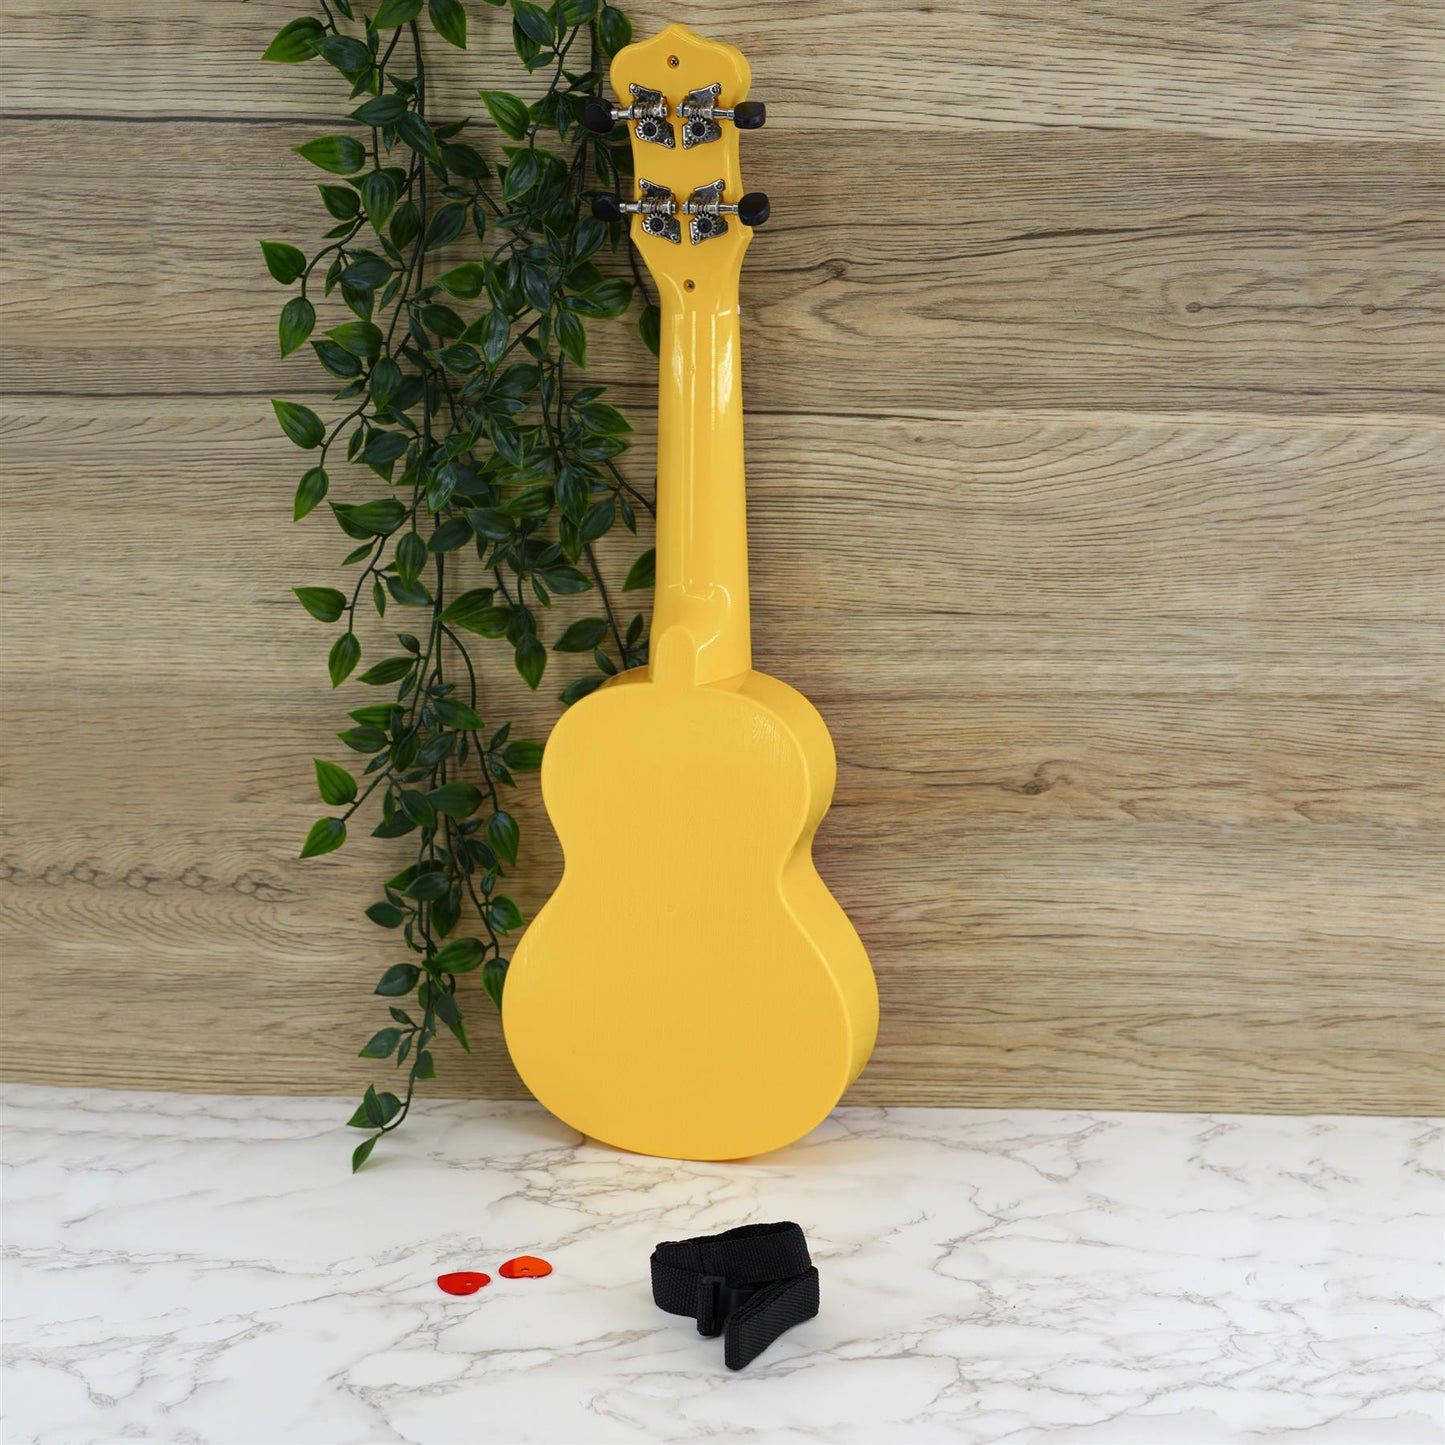 Ukulele 4 Strings Musical Instrument by The Magic Toy Shop - UKBuyZone